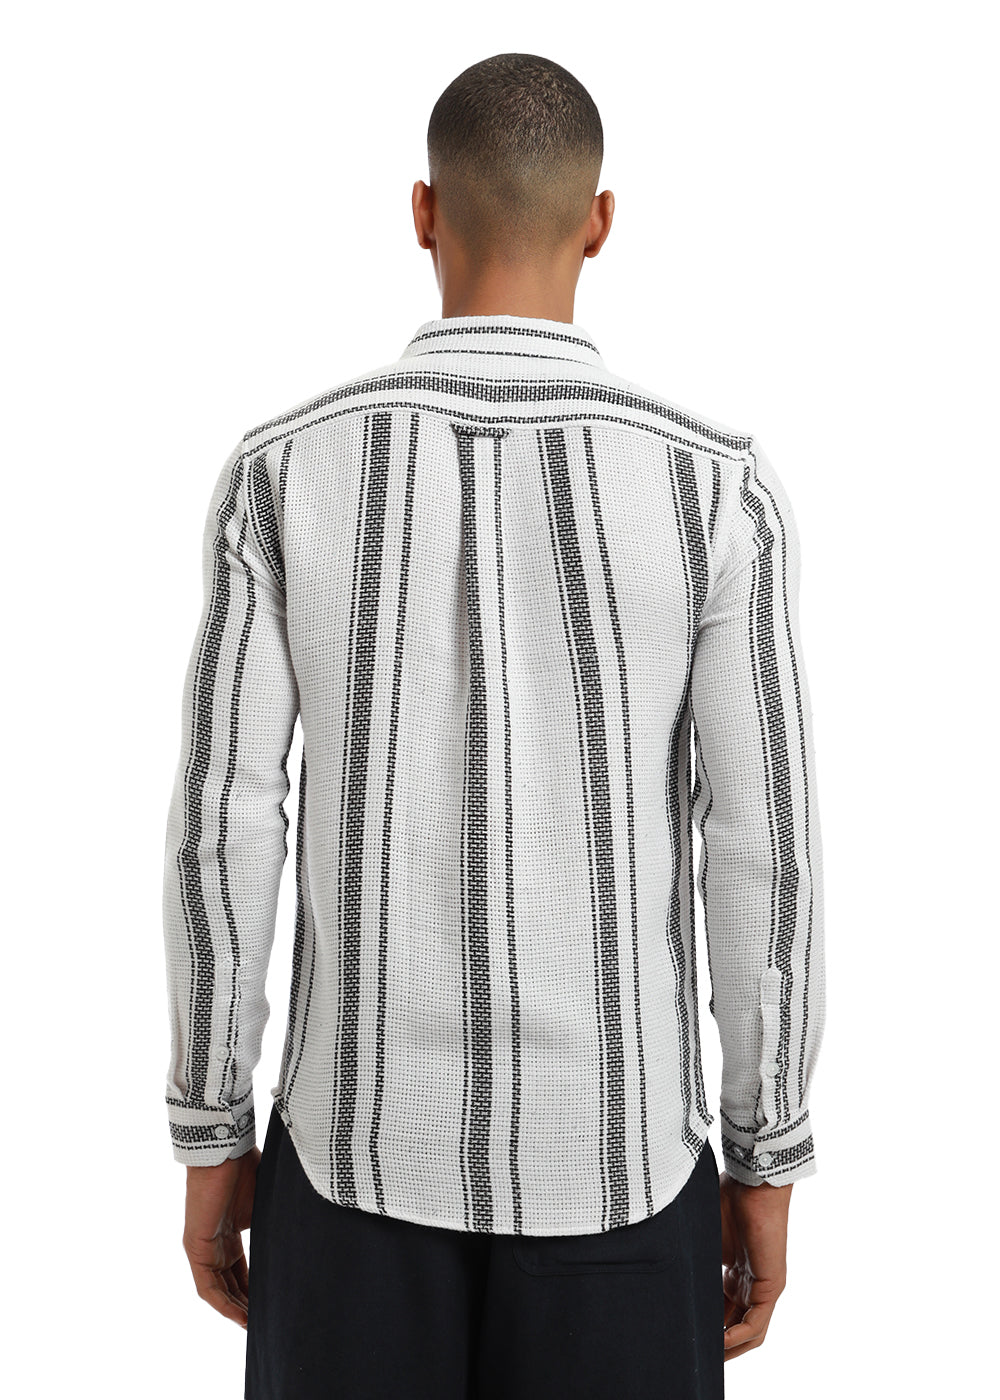 Aspect Stripe White shirt